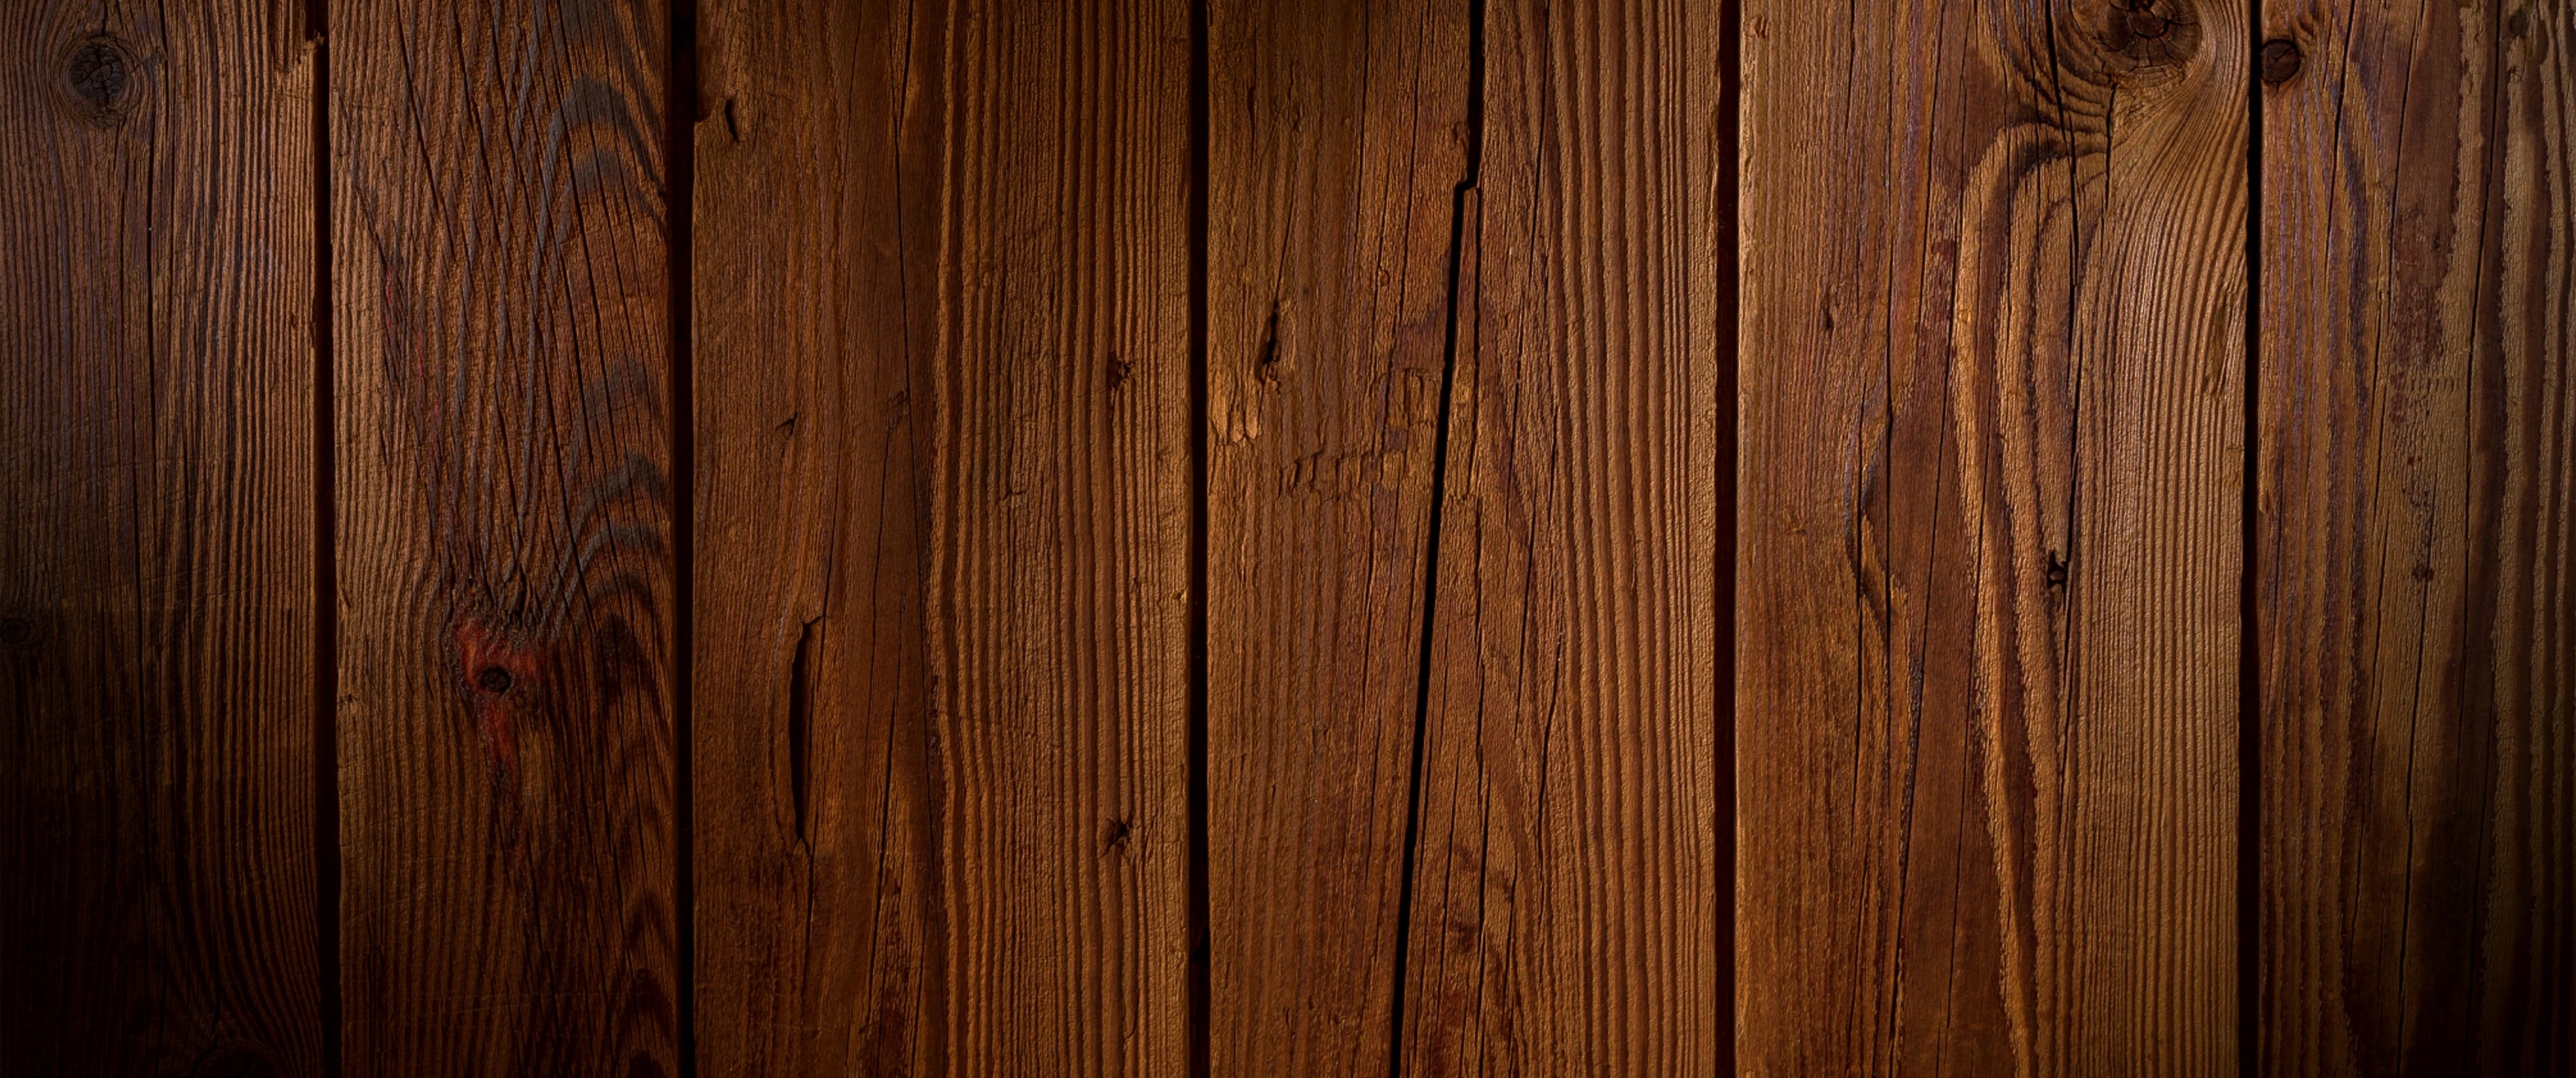 Nền gỗ: Sử dụng nền gỗ cho phòng của bạn sẽ tạo ra một không gian ấm cúng, gần gũi và đầy phong cách. Các kiến trúc sư và người thiết kế nội thất đã sử dụng nền gỗ để tạo ra những không gian sống độc đáo và đẹp mắt. Xem ảnh để tìm hiểu cách sử dụng nền gỗ để tạo ra không gian sống đầy phong cách.